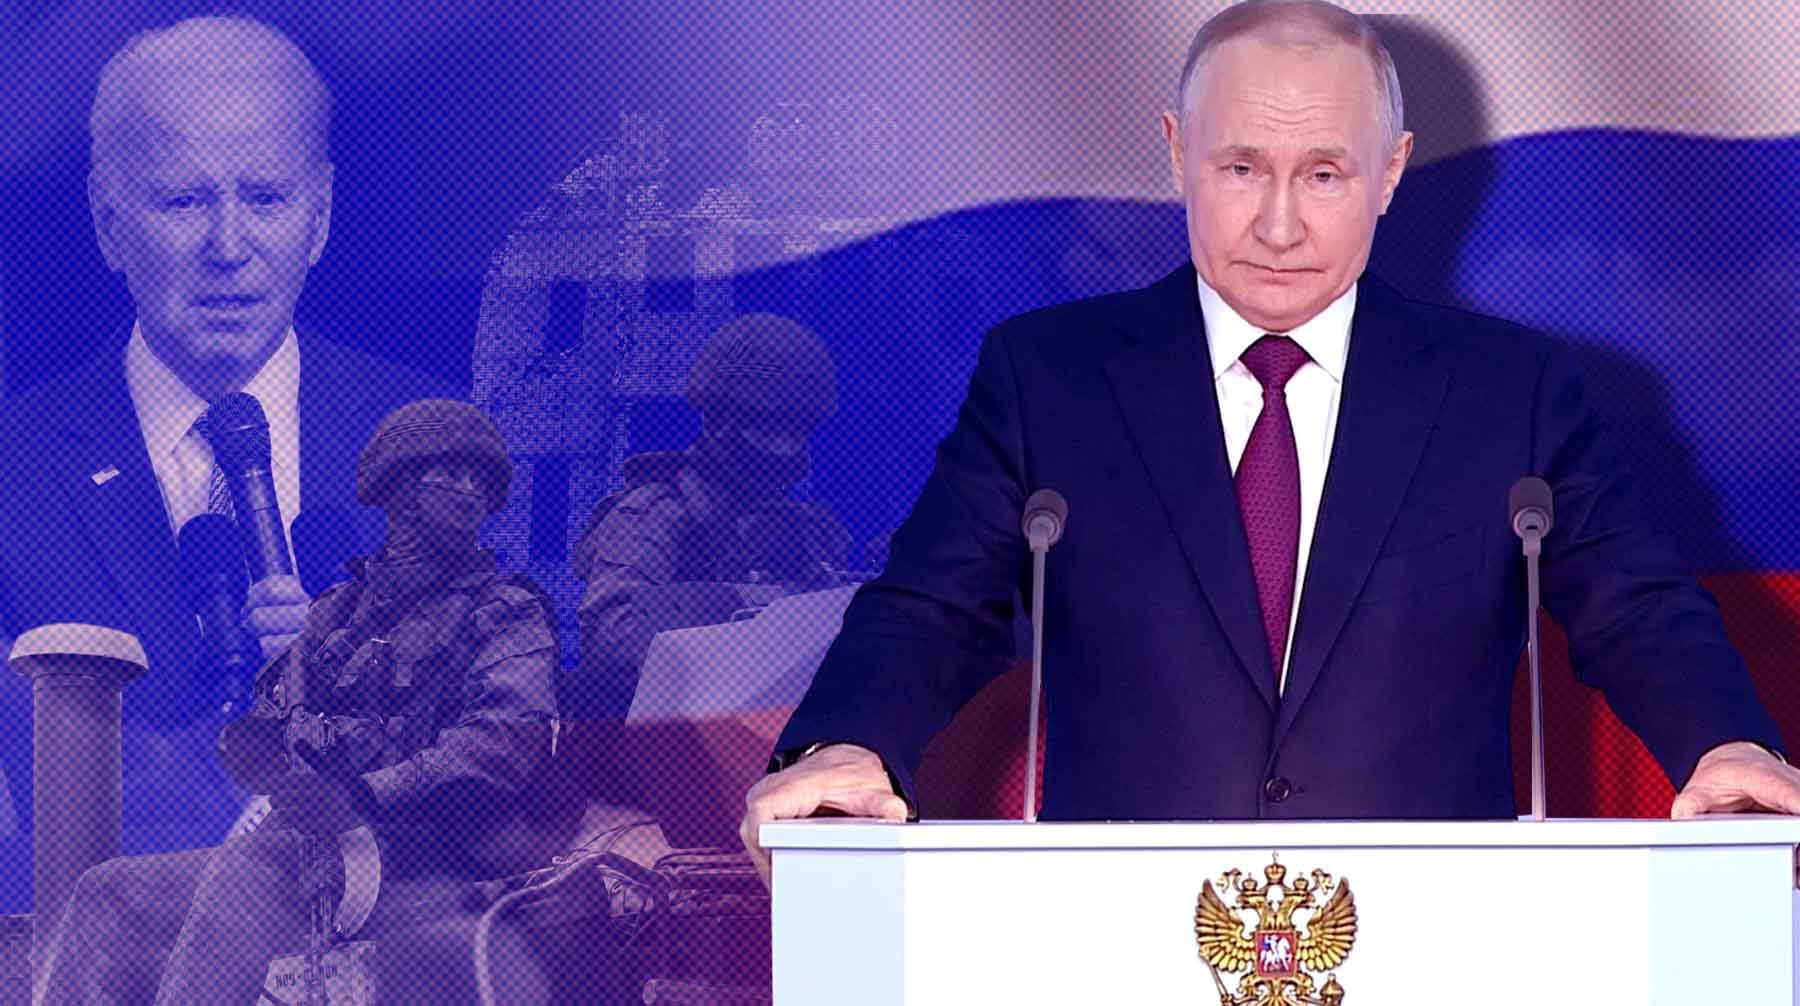 Эксперты выделили основные сигналы в речи Путина перед Федеральным собранием Коллаж: Daily Storm